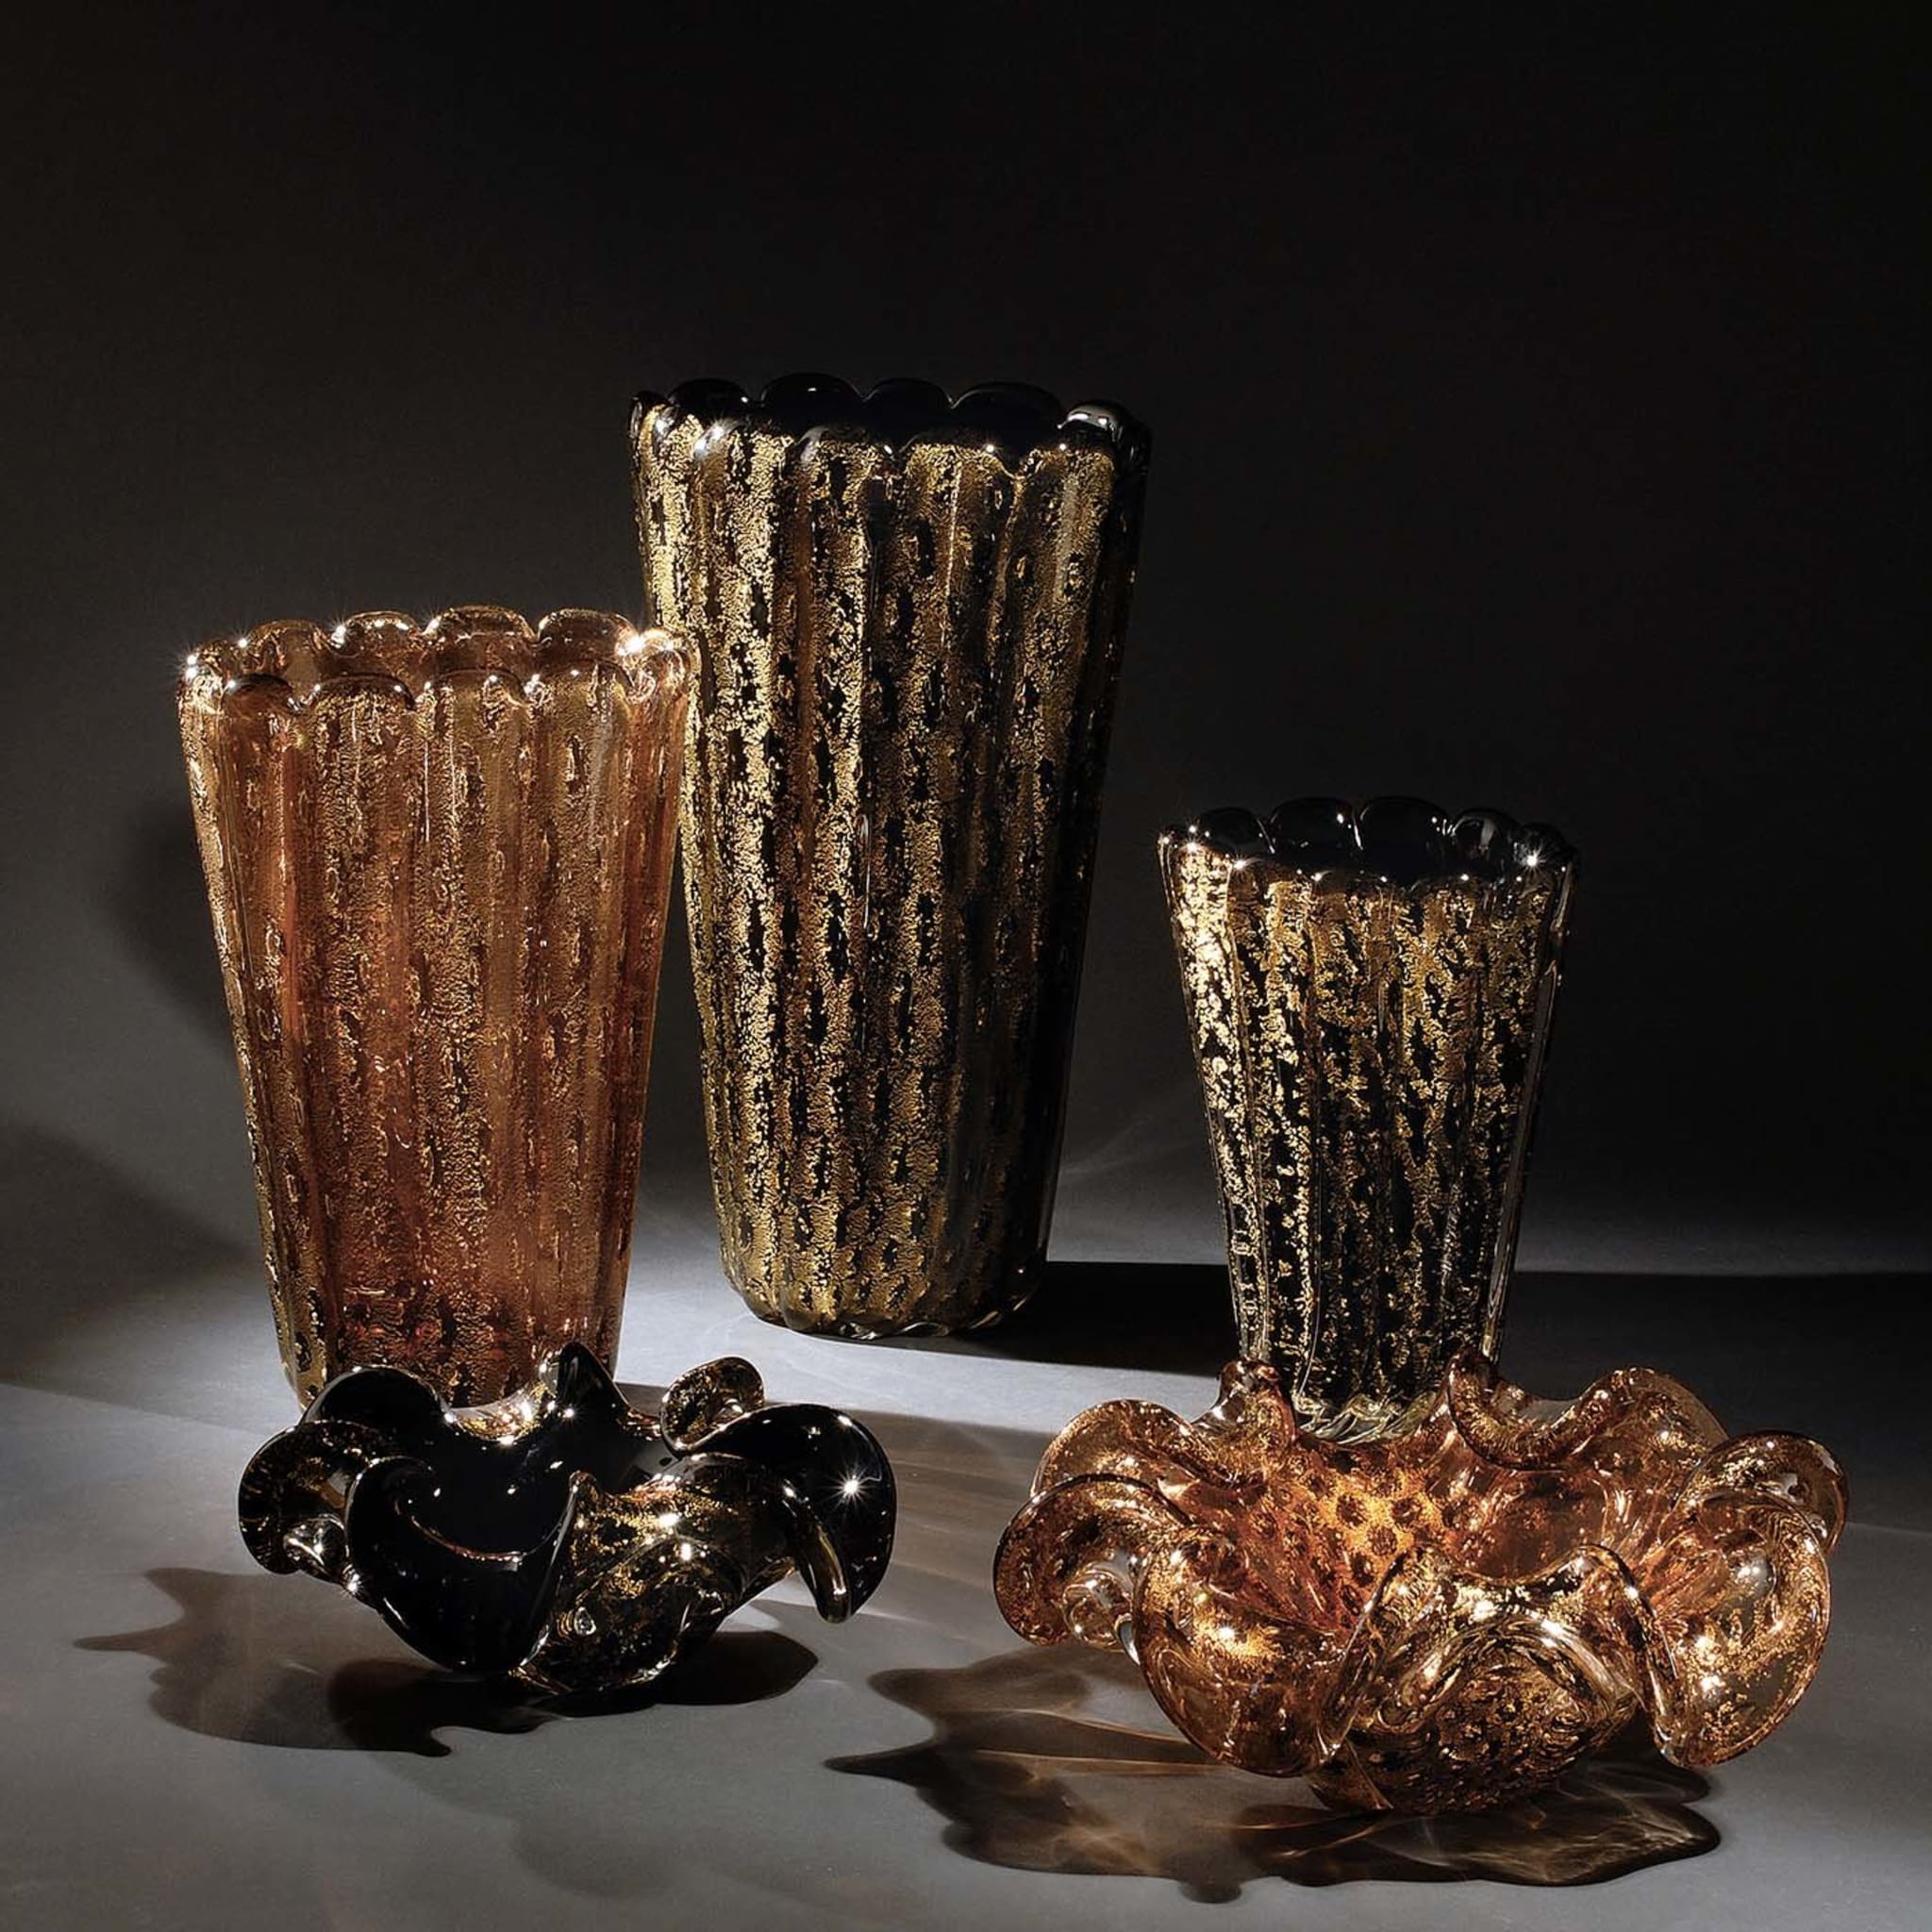 Aureum Aurati Black and Gold Vase - Alternative view 1